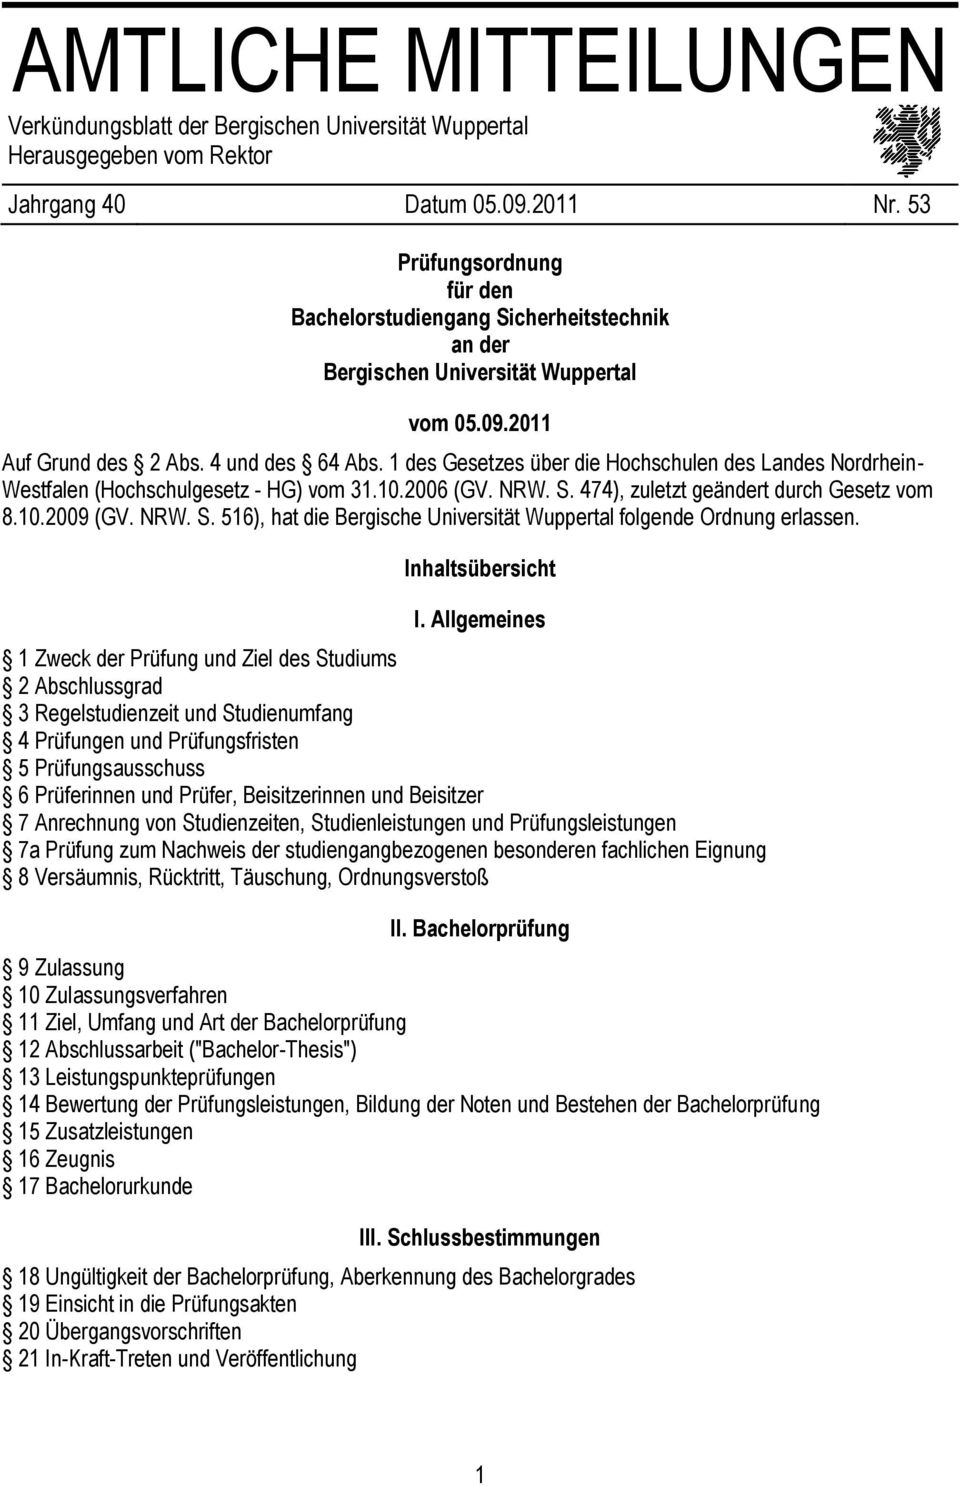 1 des Gesetzes über die Hochschulen des Landes Nordrhein- Westfalen (Hochschulgesetz - HG) vom 31.10.2006 (GV. NRW. S. 474), zuletzt geändert durch Gesetz vom 8.10.2009 (GV. NRW. S. 516), hat die Bergische Universität Wuppertal folgende Ordnung erlassen.